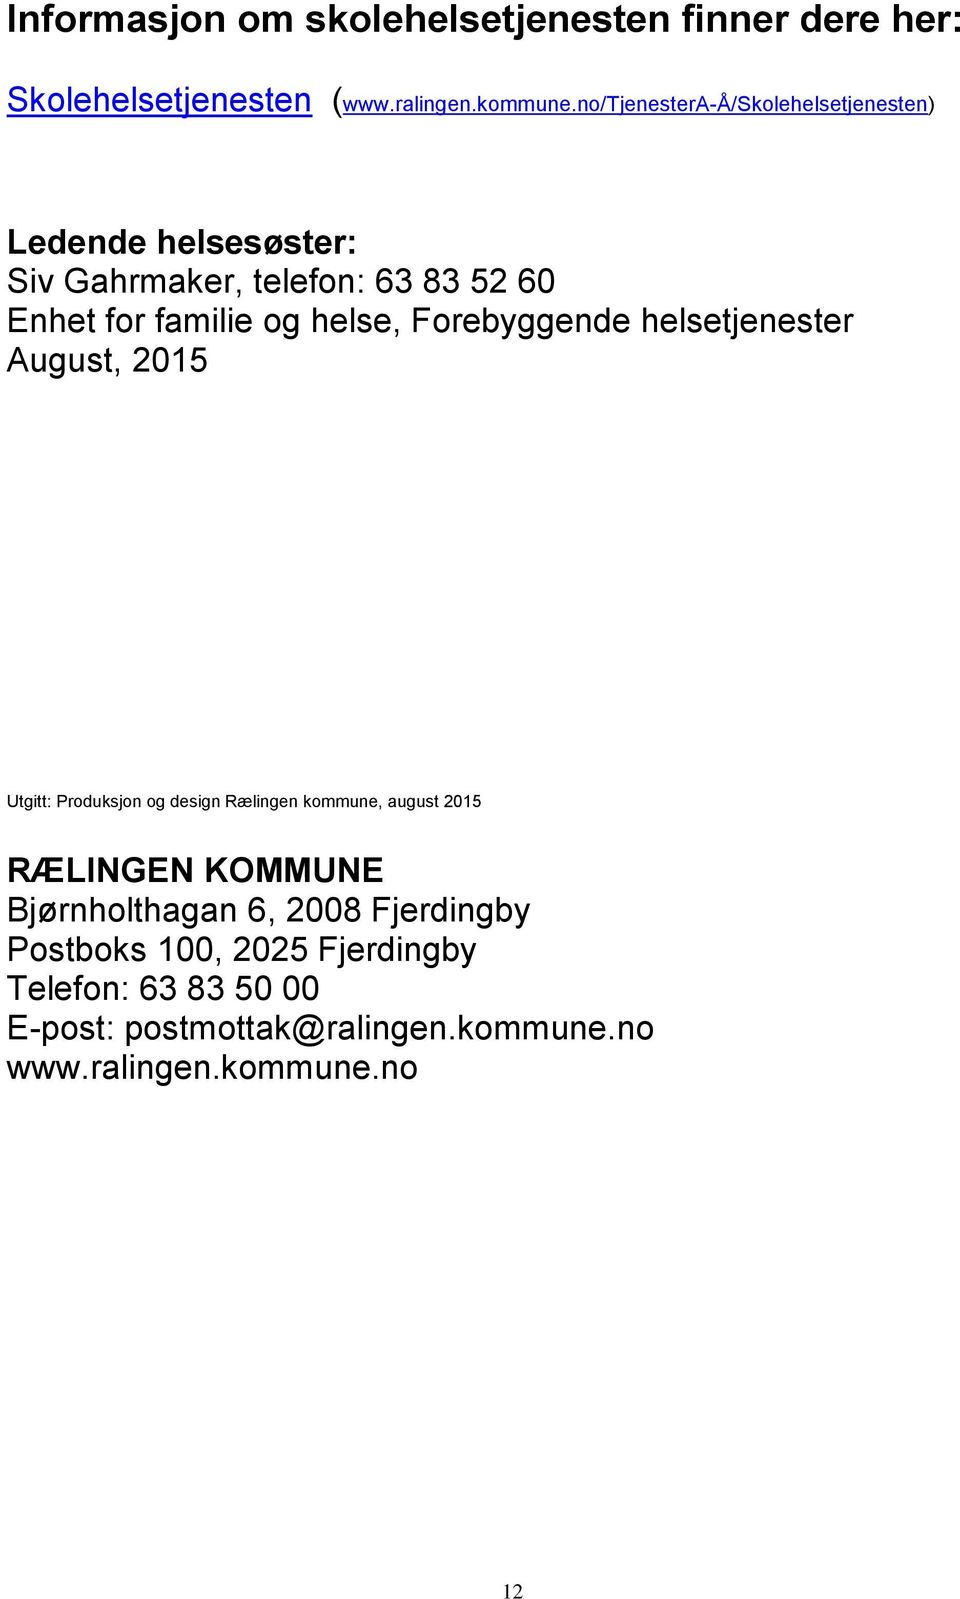 helse, Forebyggende helsetjenester August, 2015 Utgitt: Produksjon og design Rælingen kommune, august 2015 RÆLINGEN